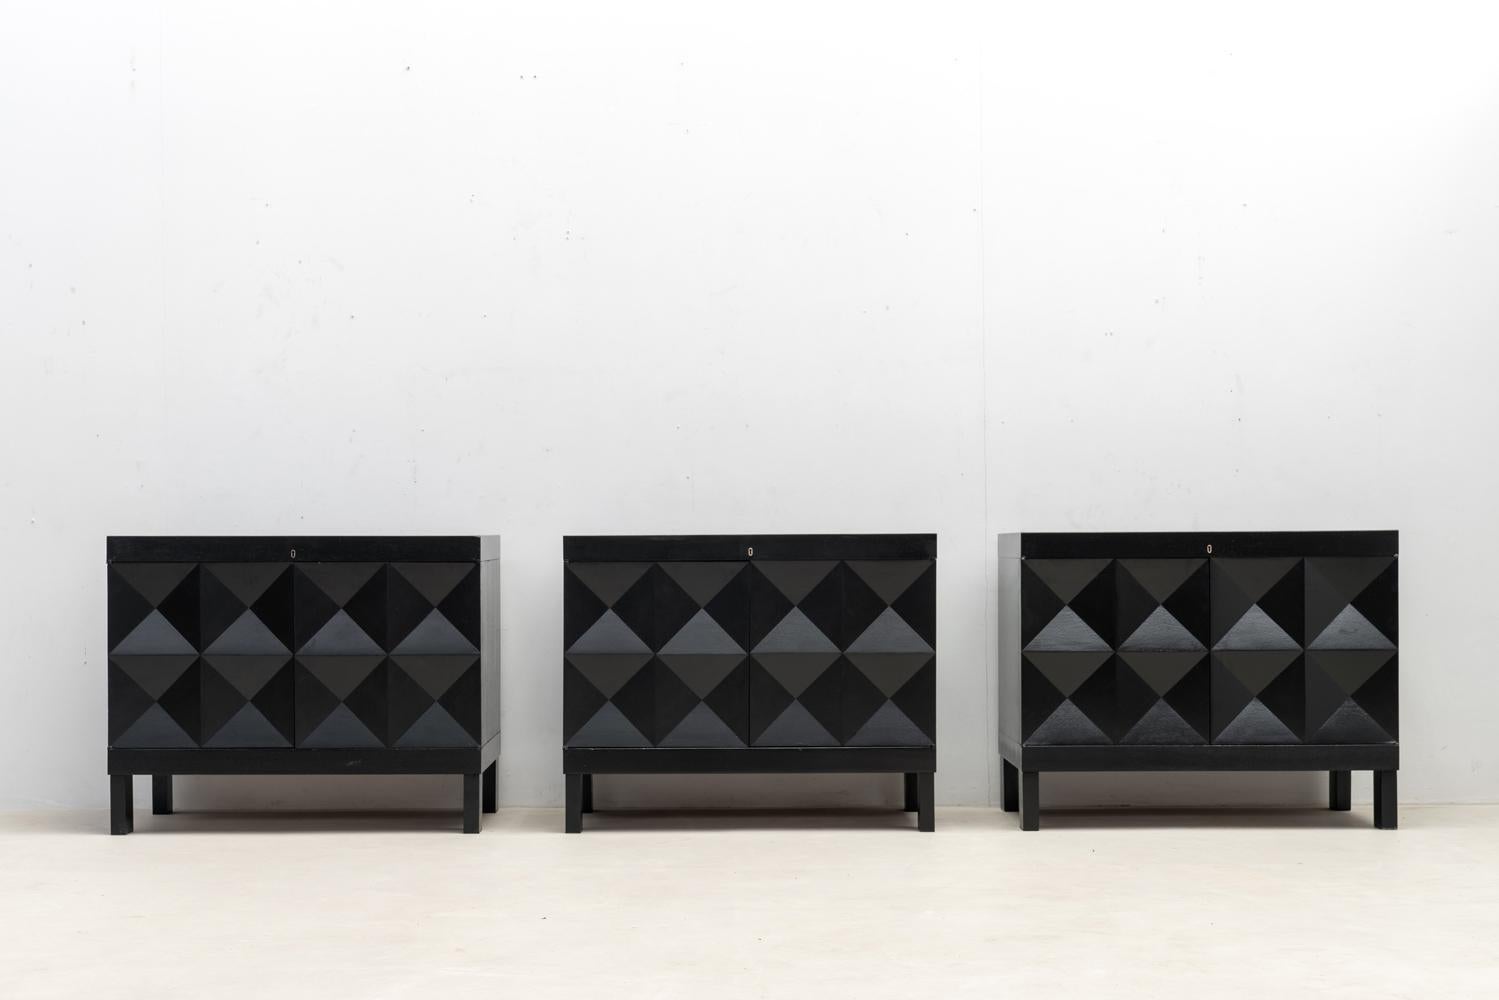 Voici un bel ensemble de cabinets graphiques créés en Belgique à la fin des années 60. Ces armoires en chêne teinté noir sont dotées de portes décorées d'un motif géométrique, ce qui ajoute de la profondeur au design.

A l'intérieur, de nombreux